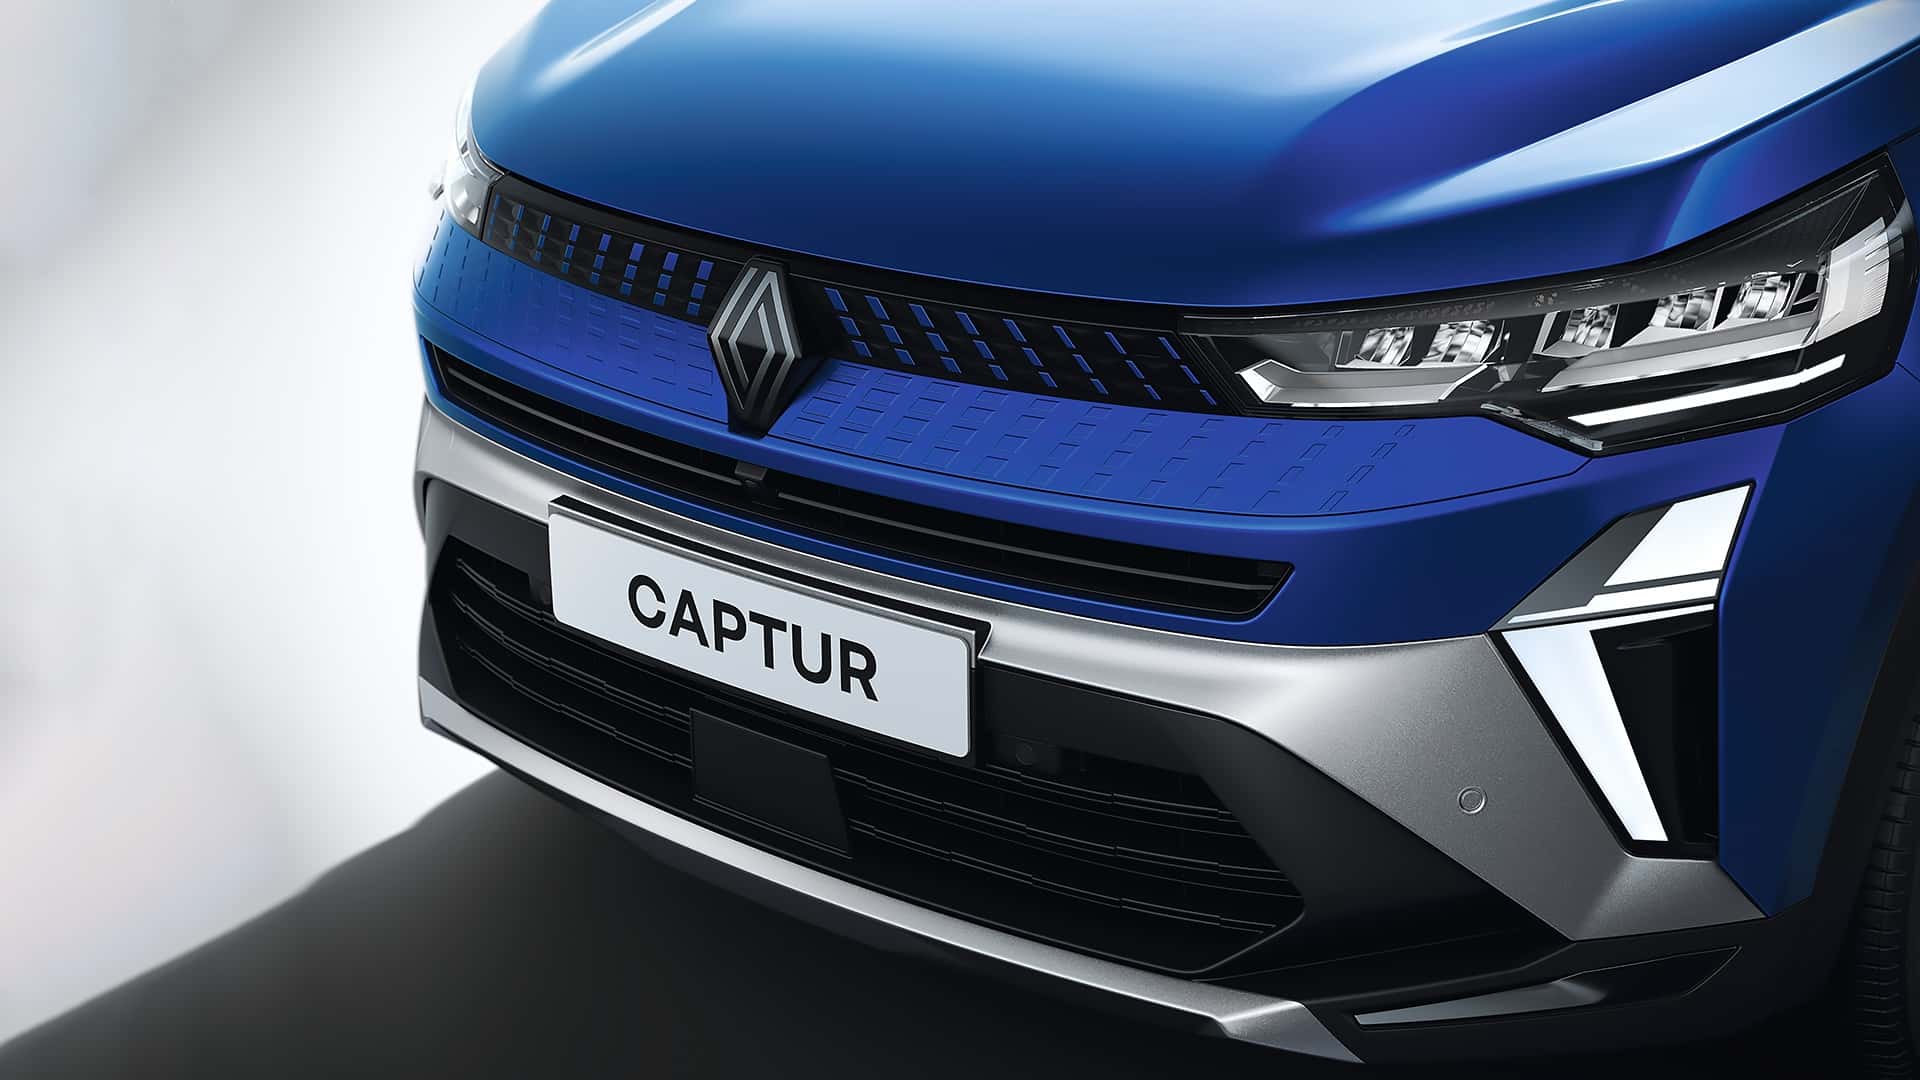 Makyajlı Renault Captur tanıtıldı: İşte tasarımı ve özellikleri